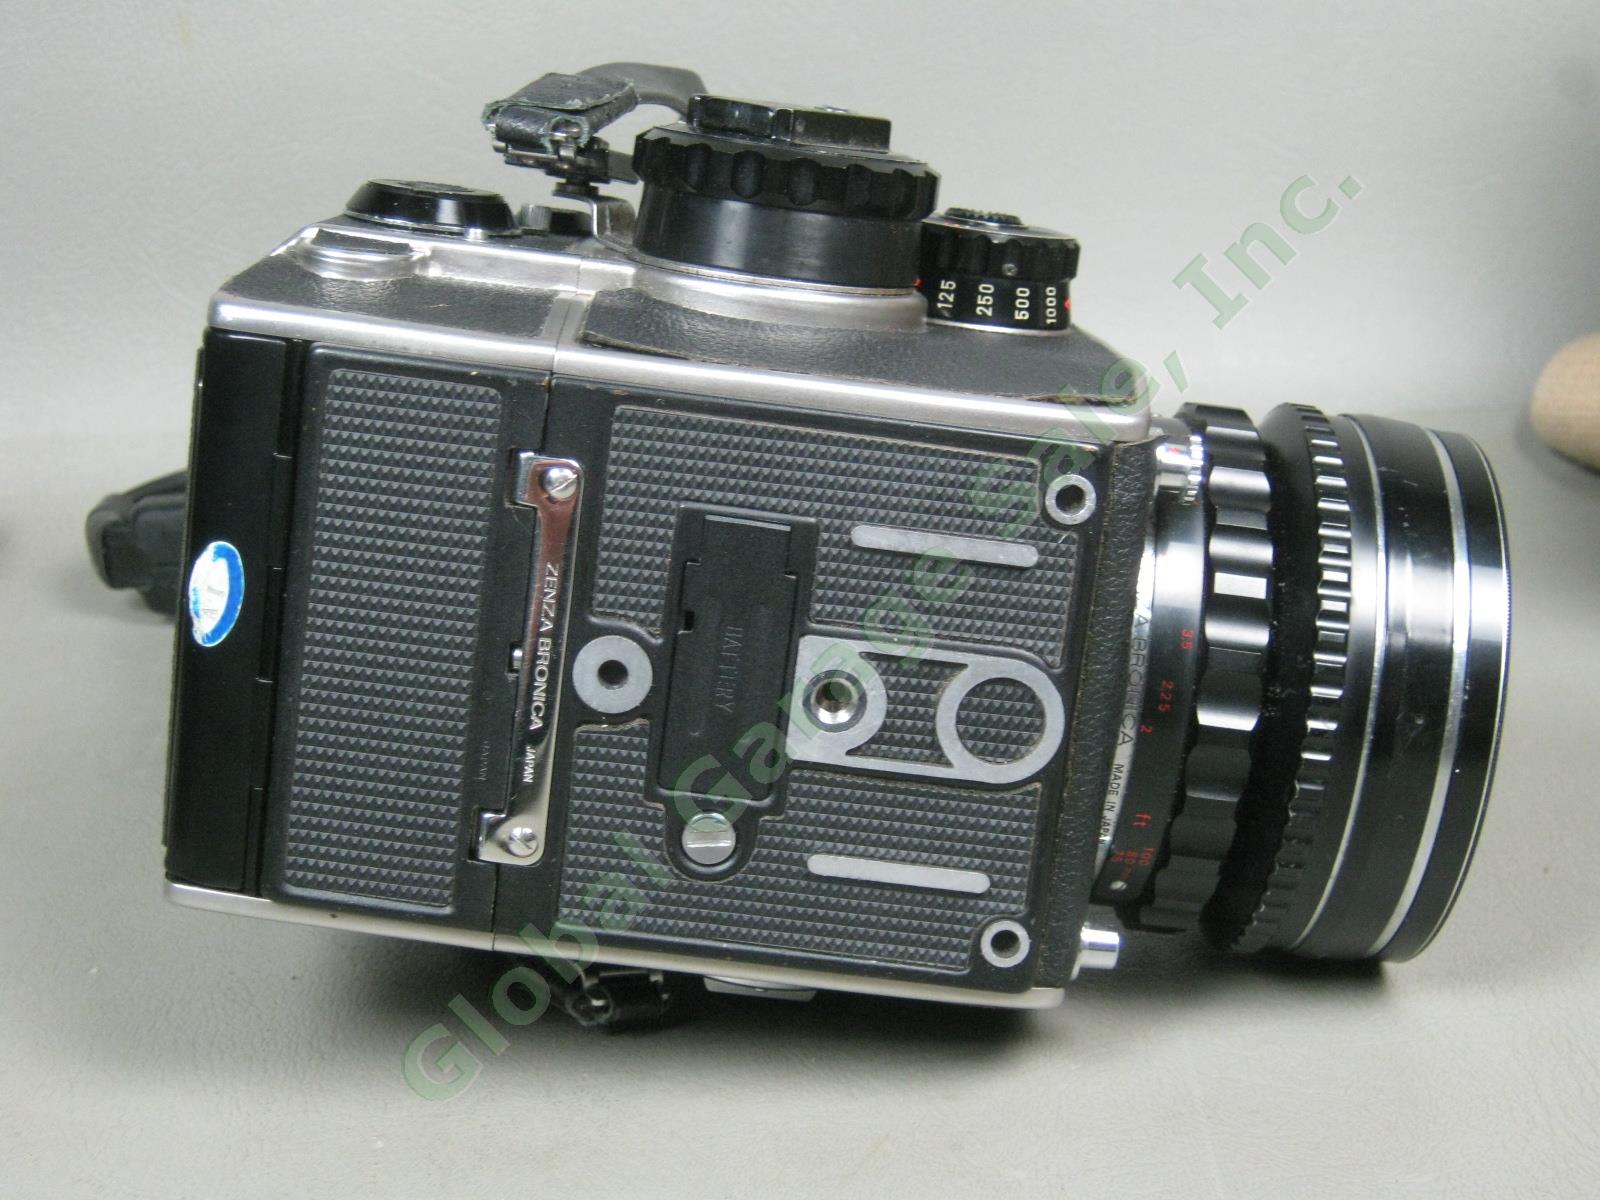 Zenza Bronica EC-TL Camera Nippon Kogaku Nikkor-H 50mm 1:3.5 f/3.5 Lens Bundle 6